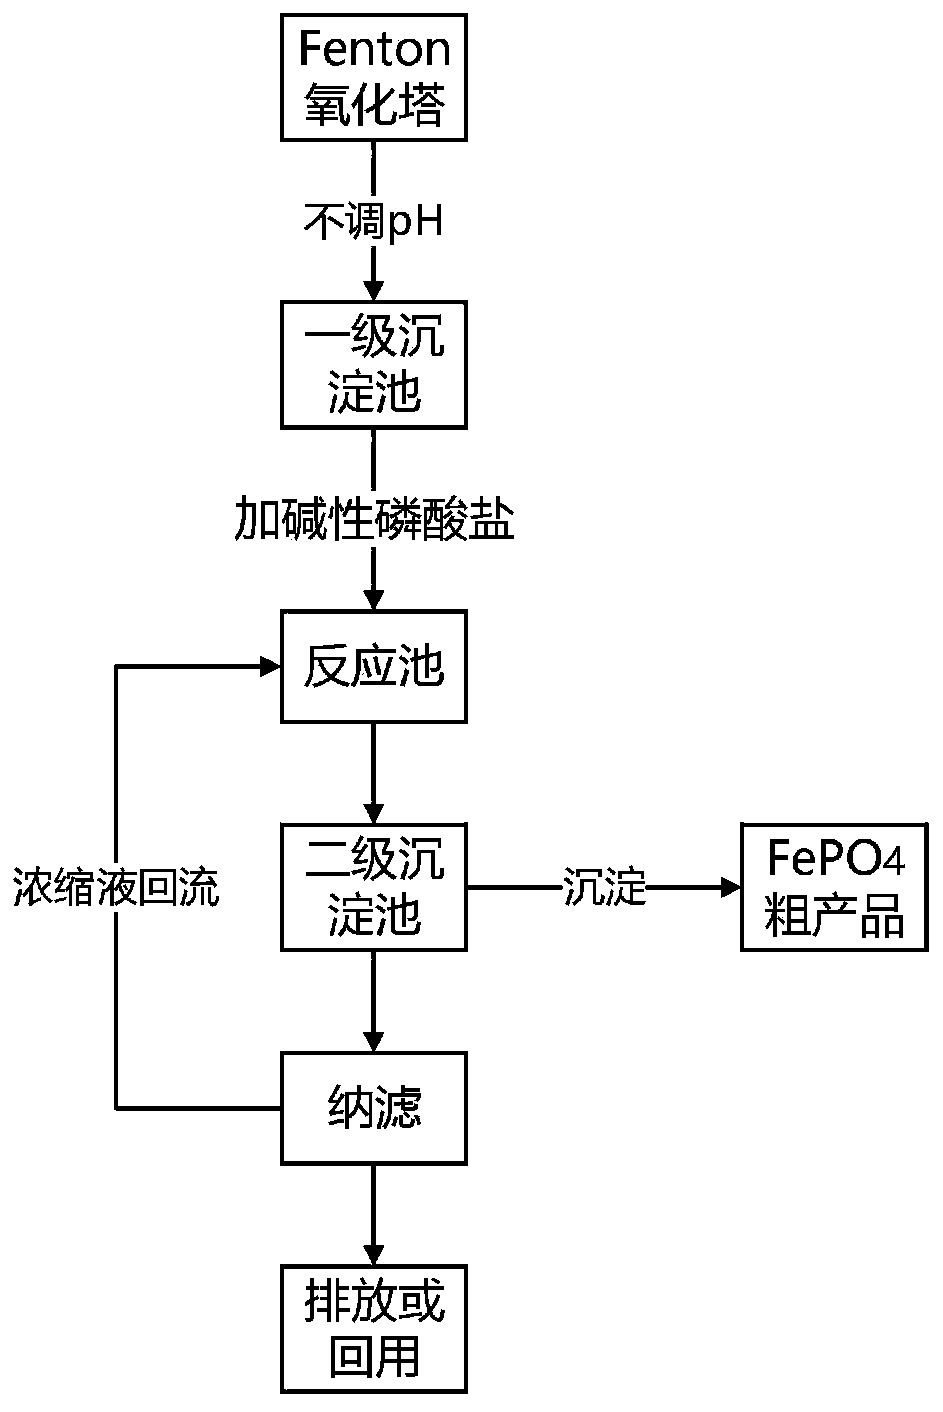 Resource utilization method for synchronously treating Fenton iron sludge and obtaining FePO4